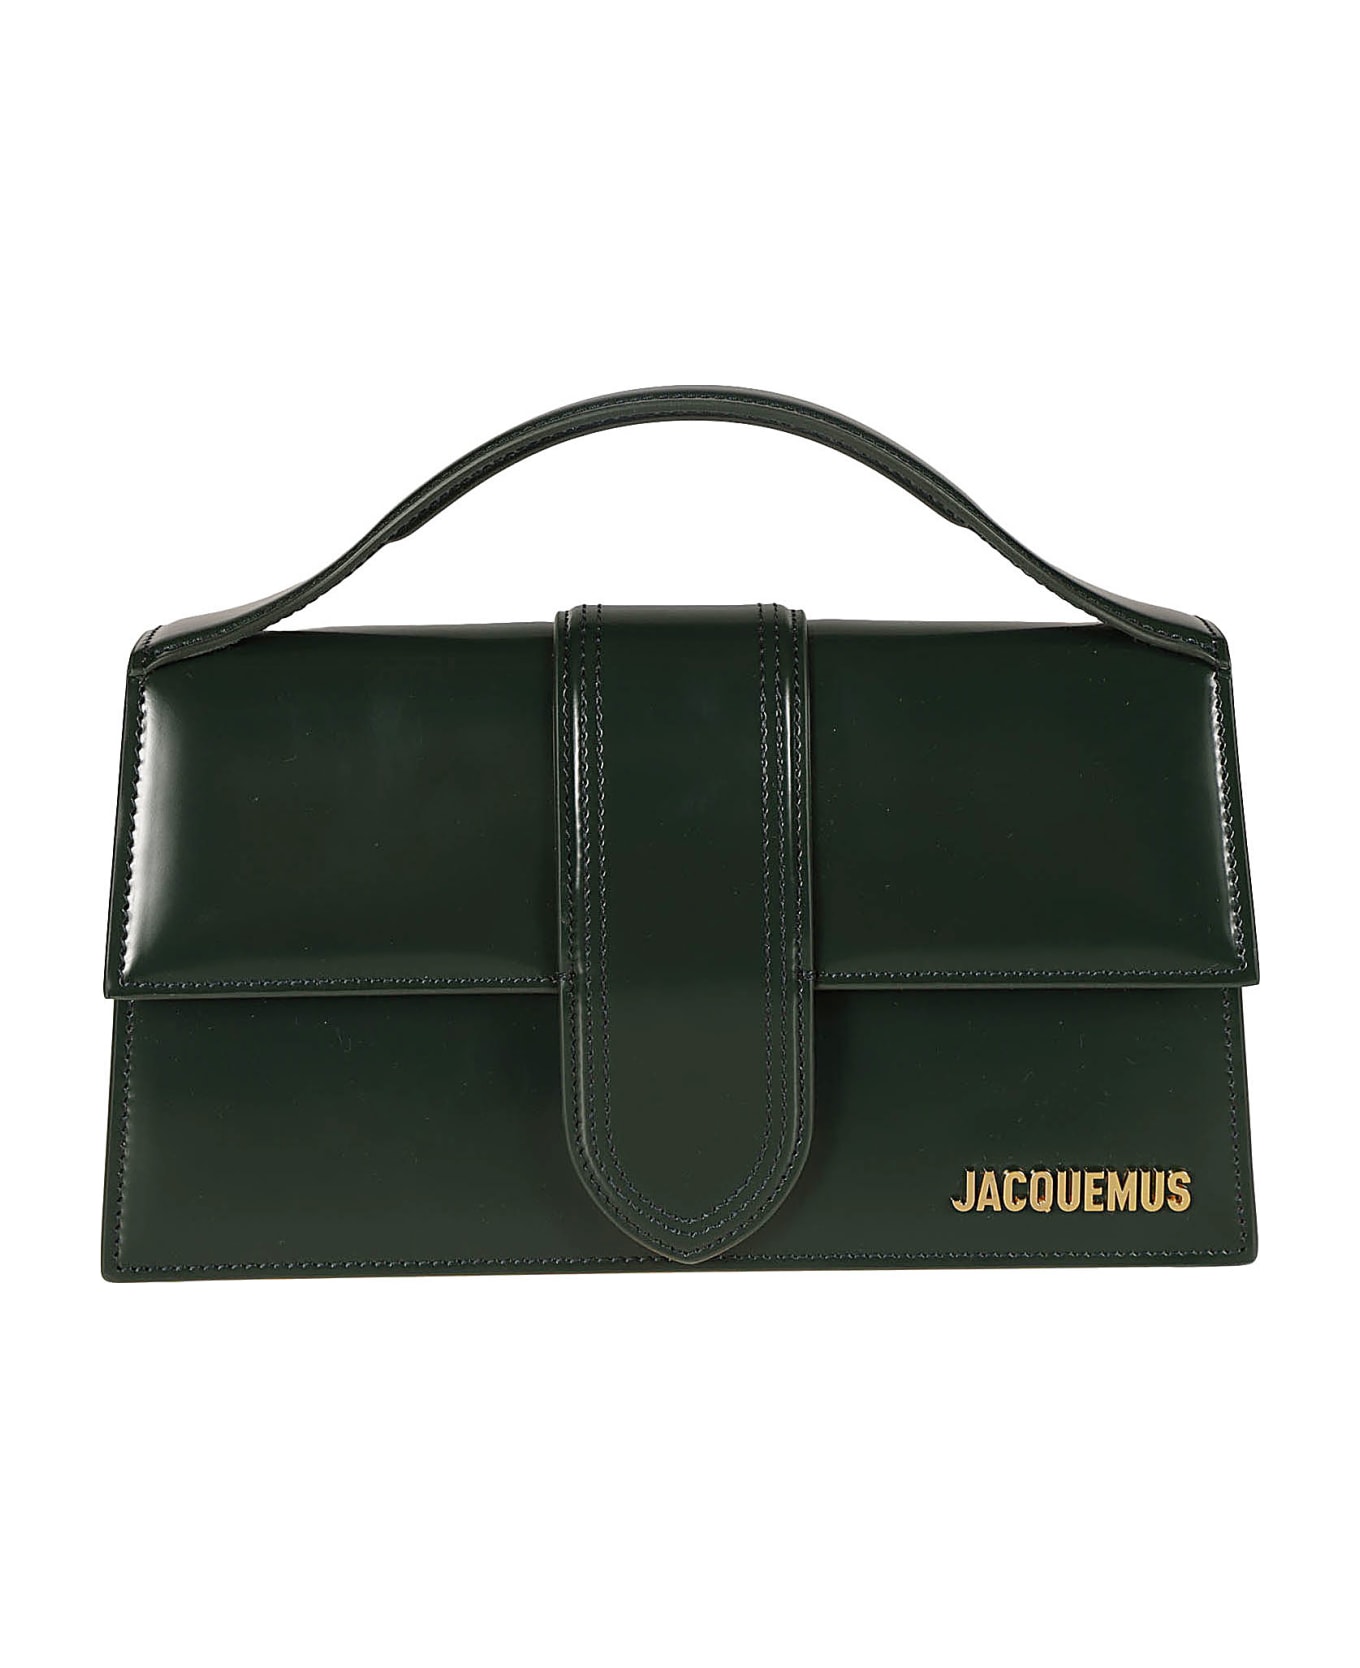 Jacquemus Le Grand Bambino Top Handle Bag - Dark Green